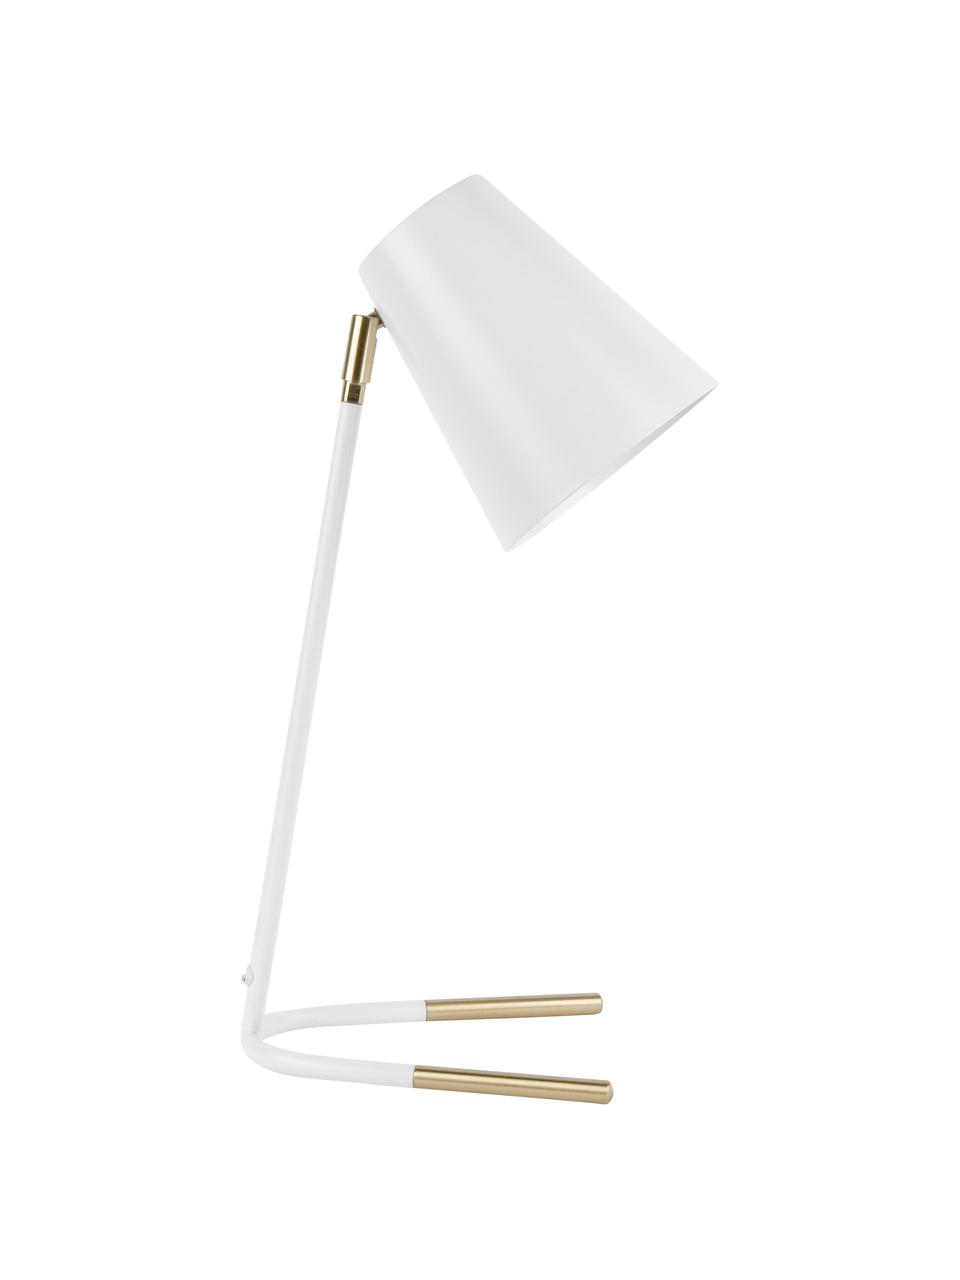 Schreibtischlampe Noble mit Gold-Dekor, Lampenschirm: Metall, beschichtet, Lampenfuß: Metall, beschichtet, Weiß, Goldfarben, B 25 x H 46 cm